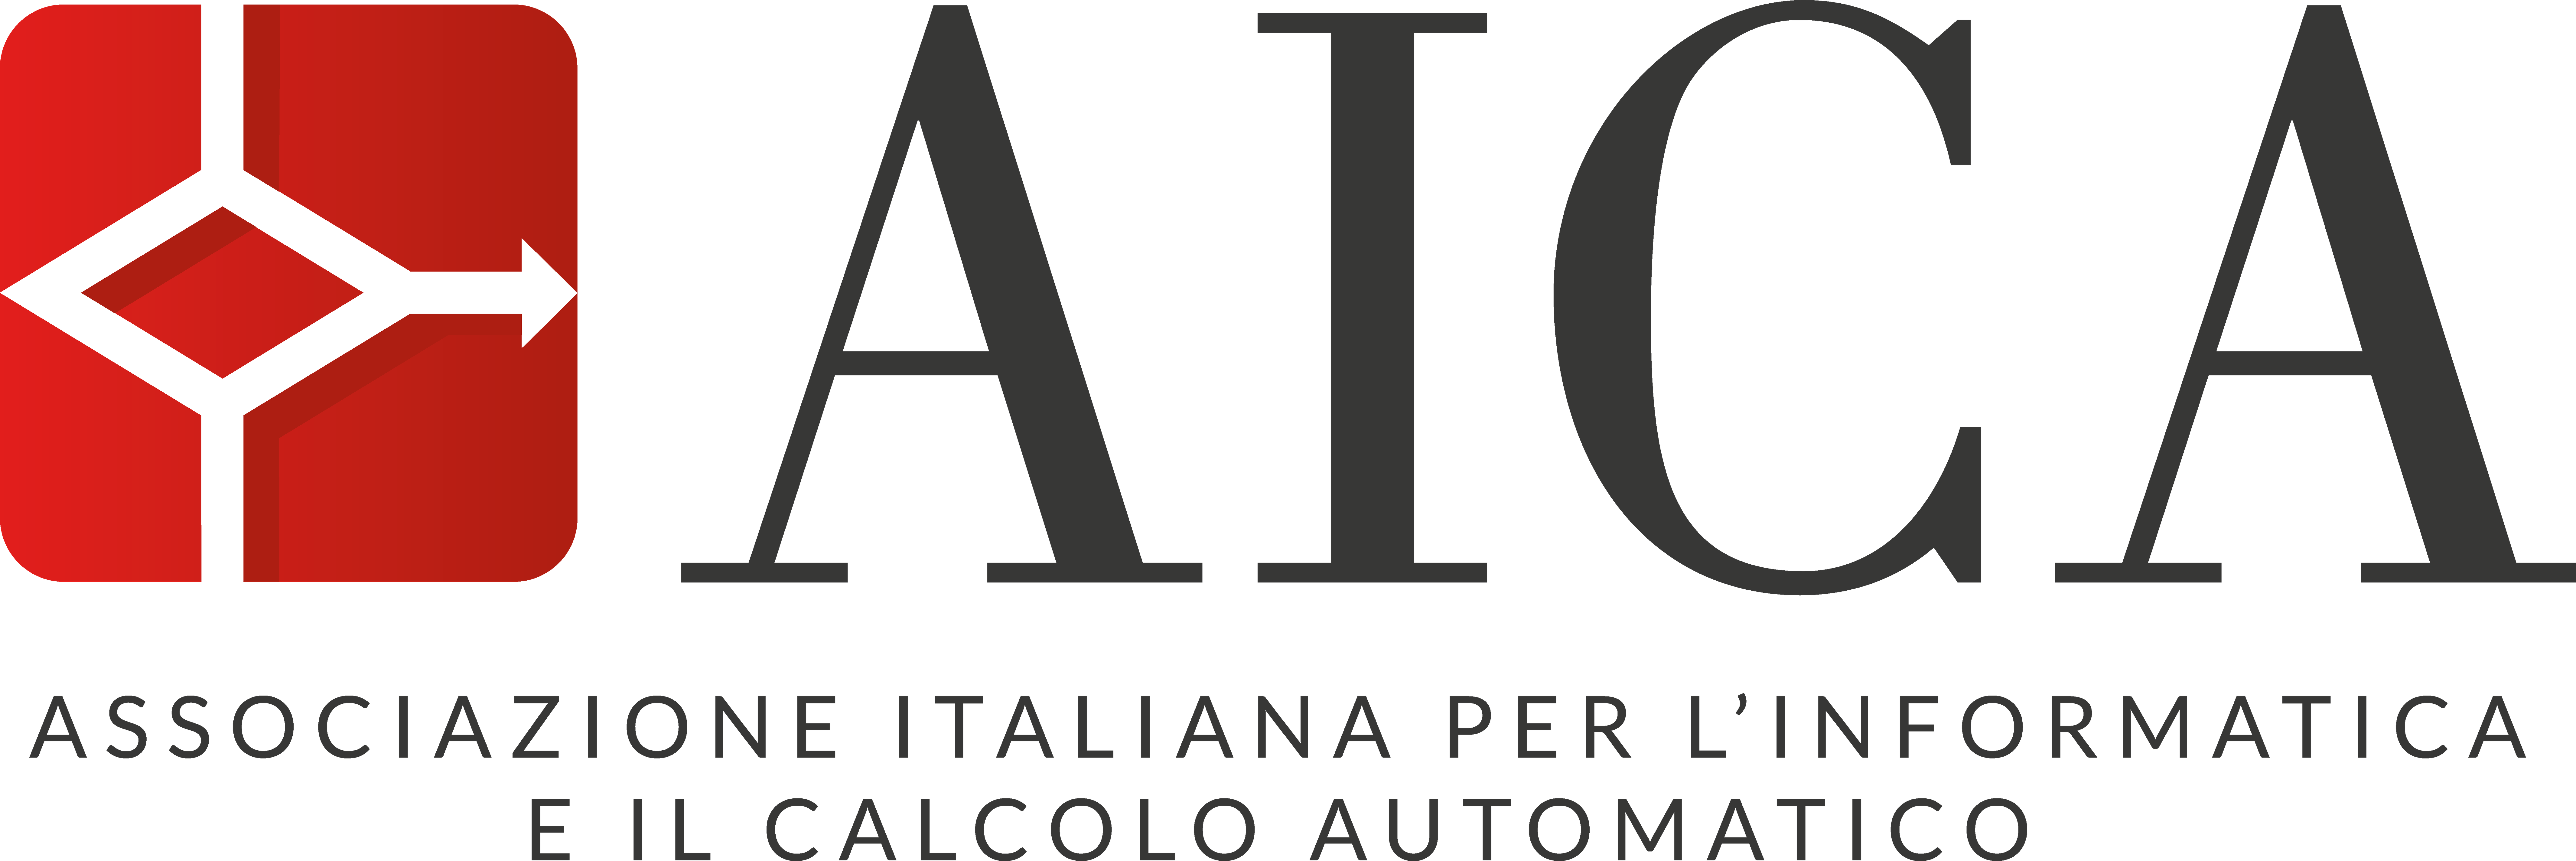 Logo AICA colore con payoff